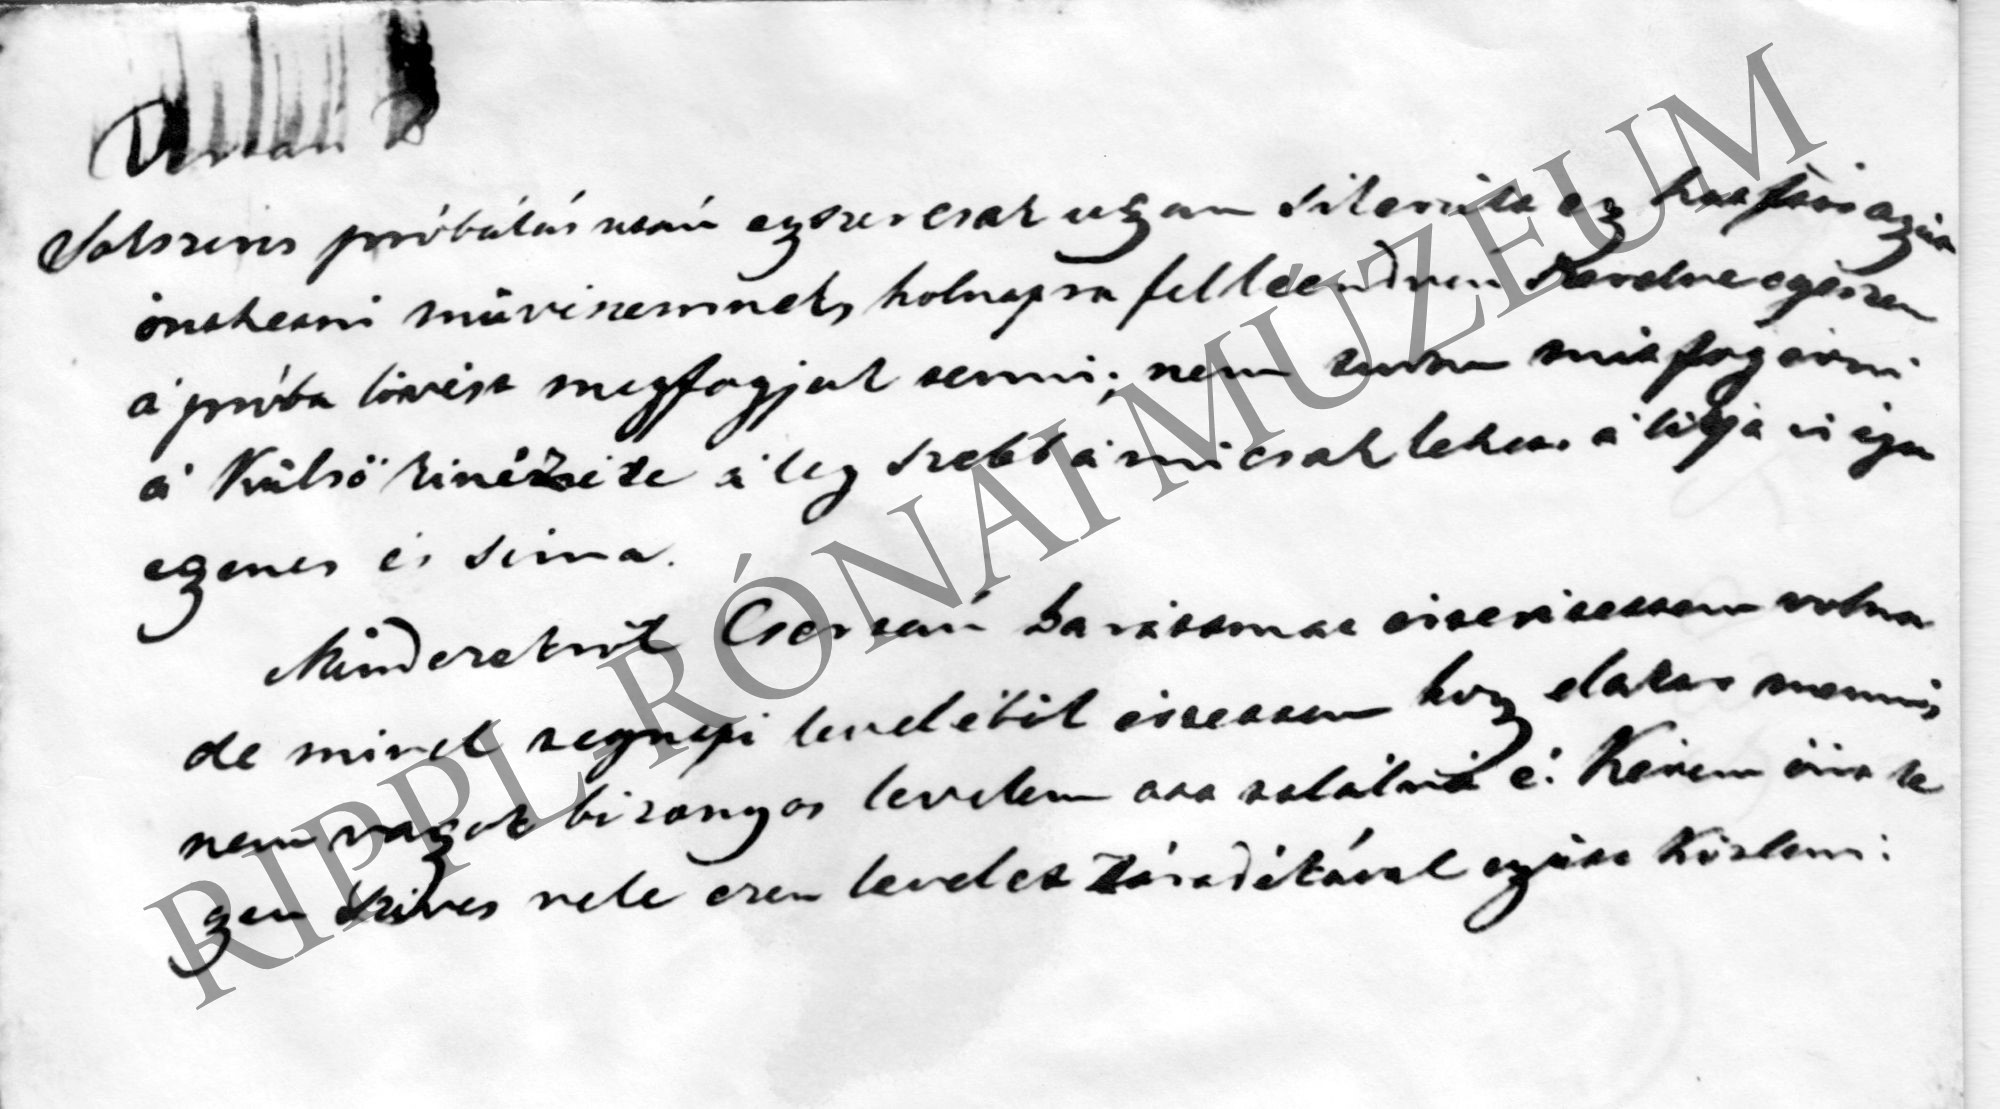 Noszlopy Gáspár levele a Balatoni Gőzhajózási Társaság alelnökének 1849. július 29-én - a levél befejező része (Rippl-Rónai Múzeum CC BY-NC-SA)